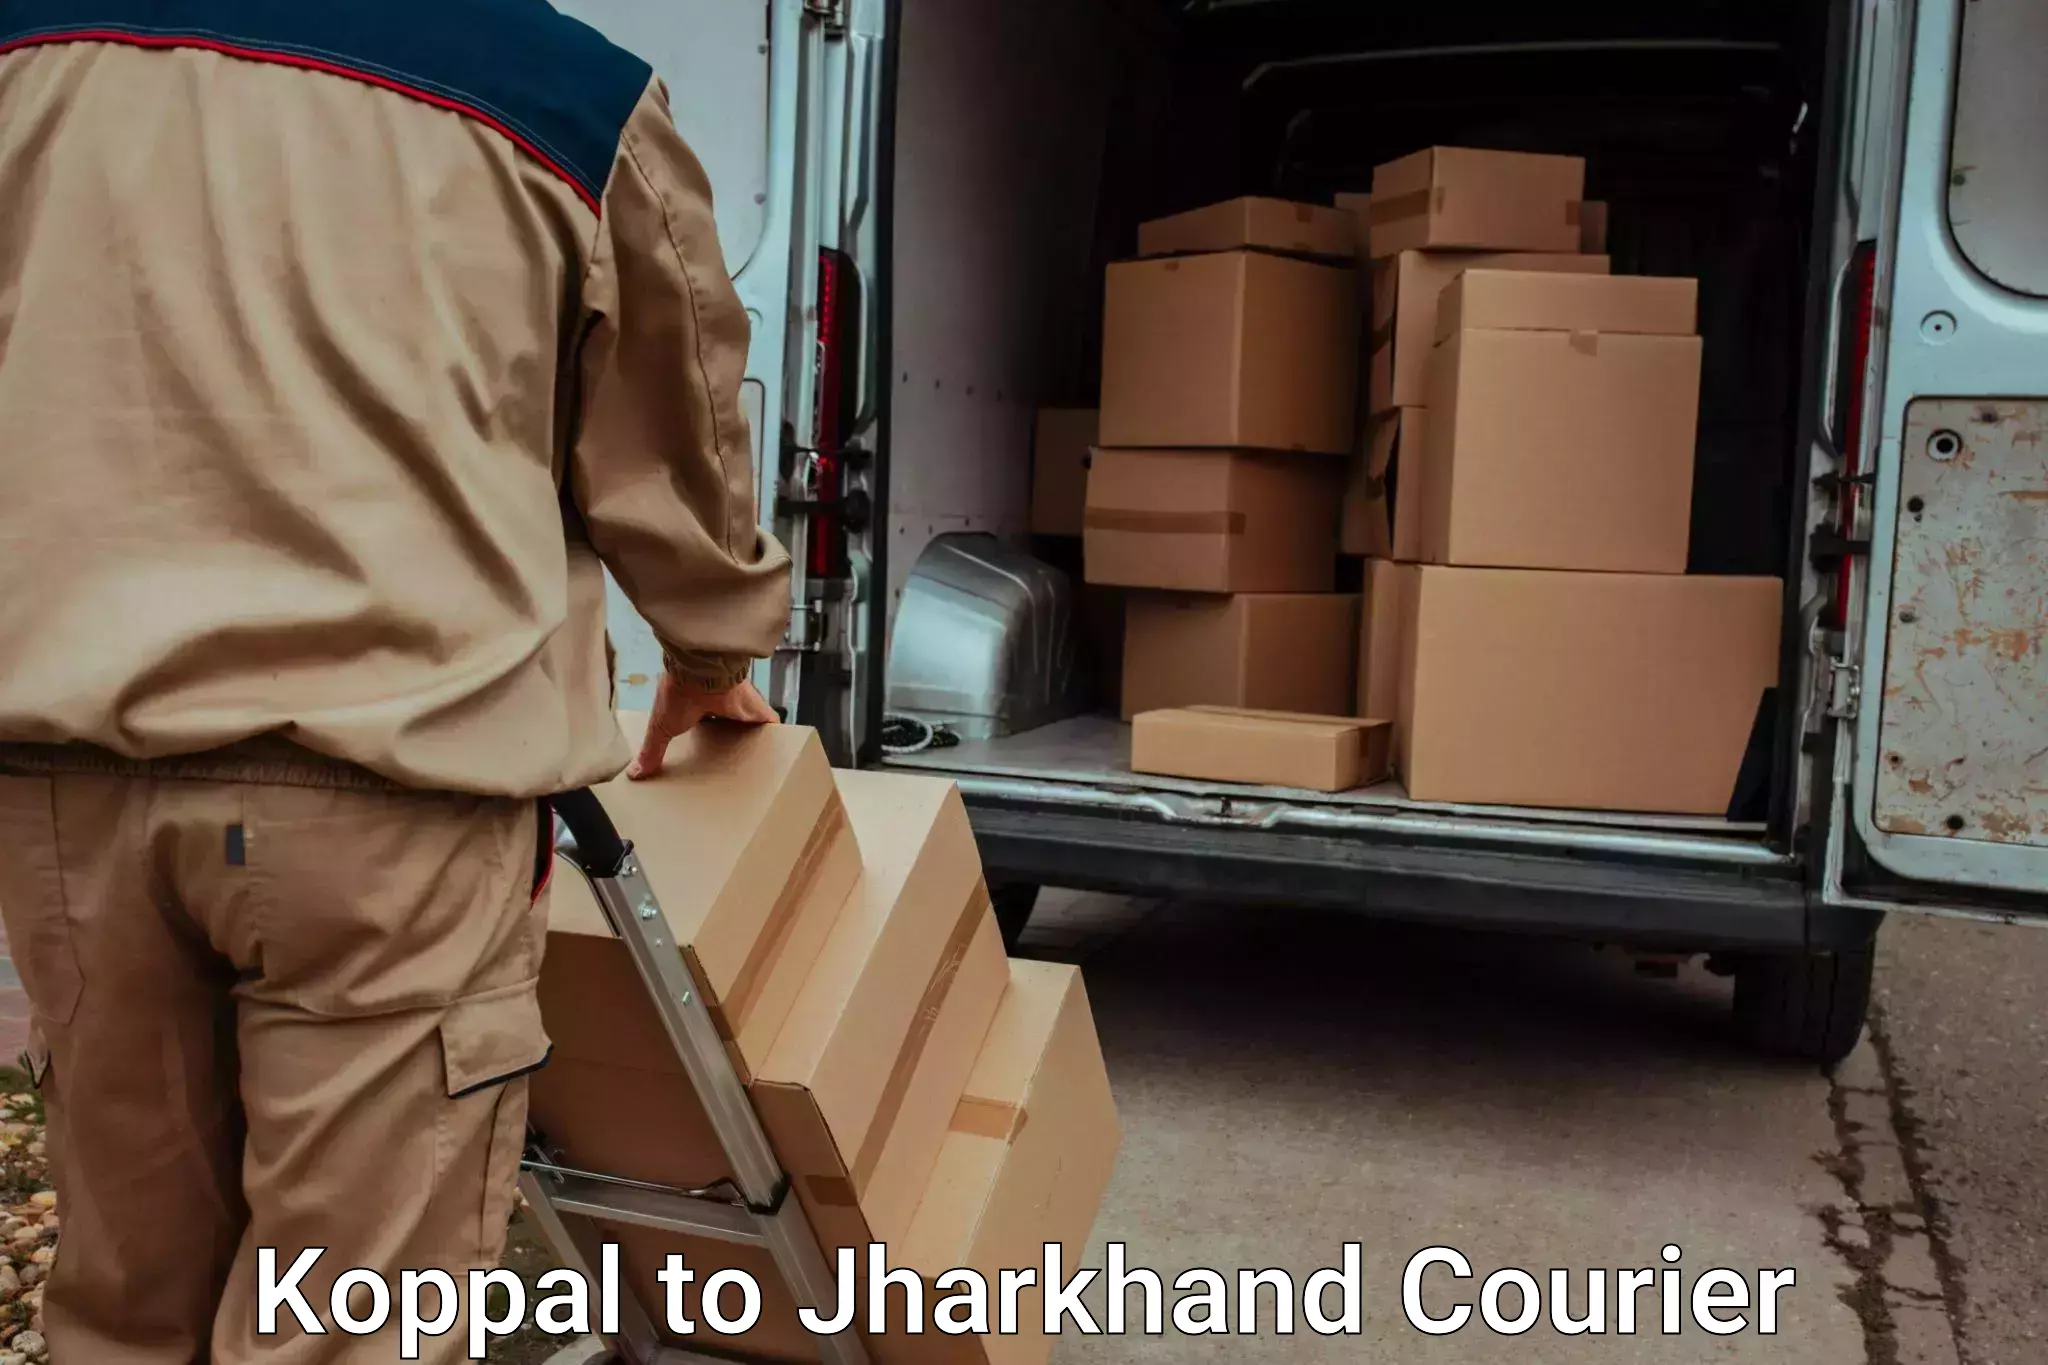 Baggage shipping service Koppal to Ranchi